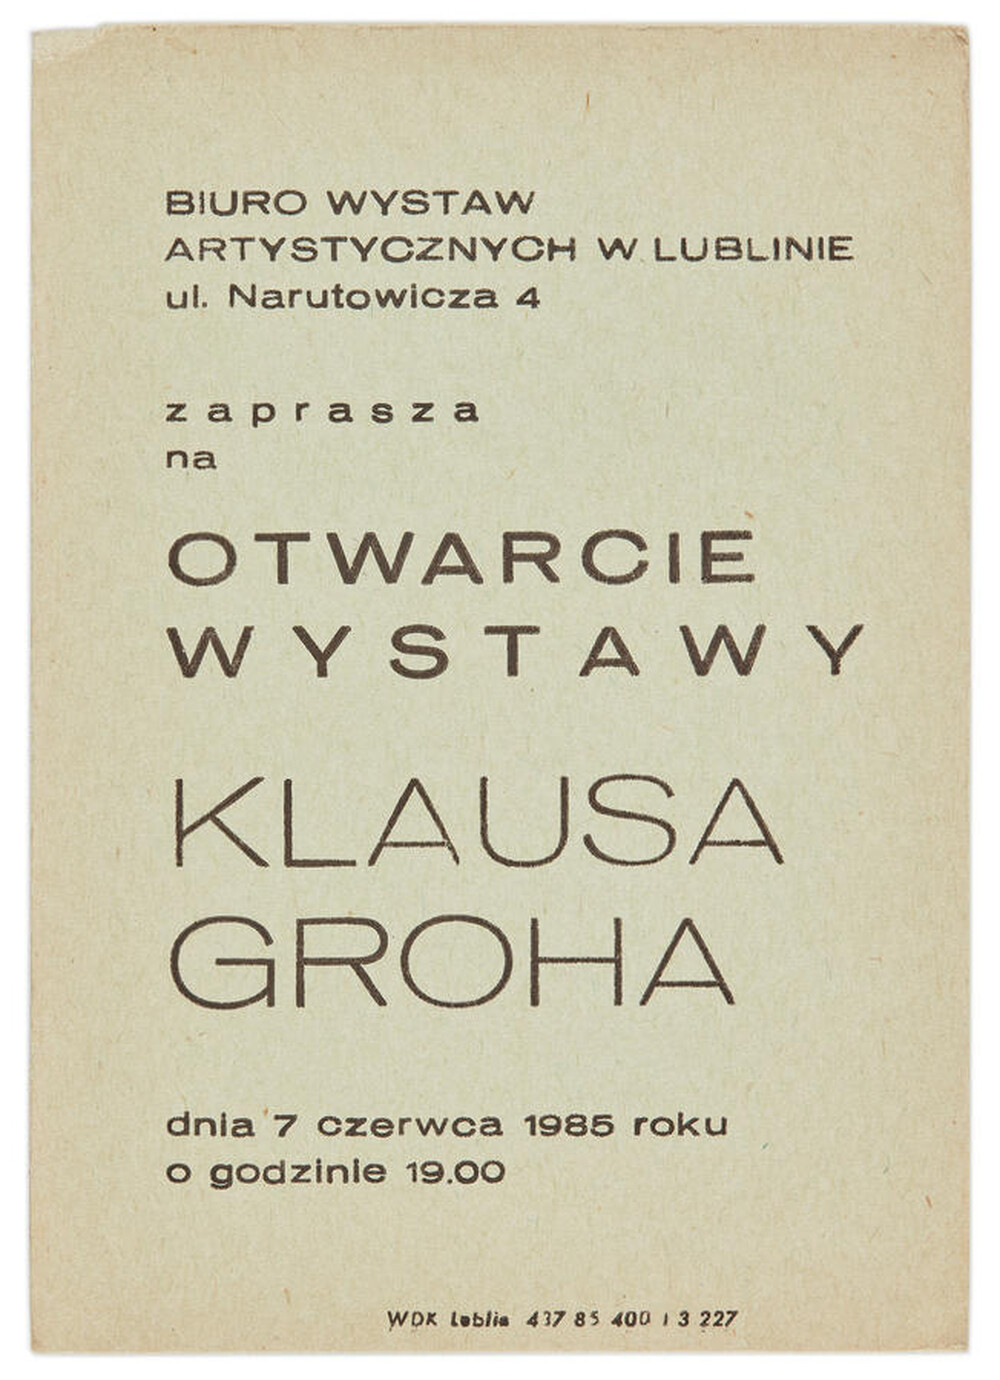 Zaproszenie na otwarcie do wystawy Klausa Grocha